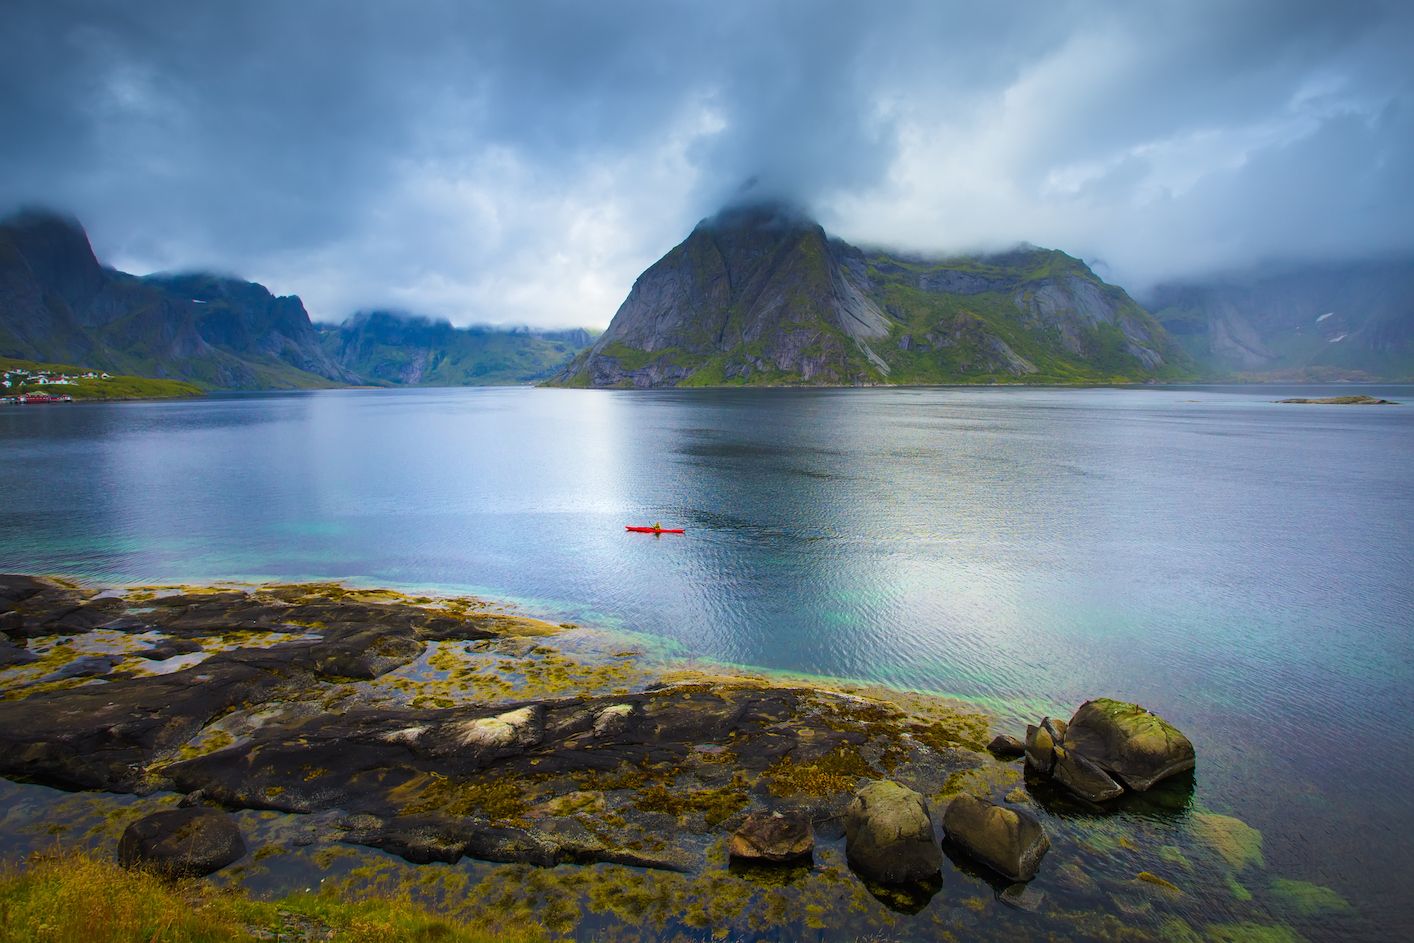 A solo kayaker in the Lofoten Islands.